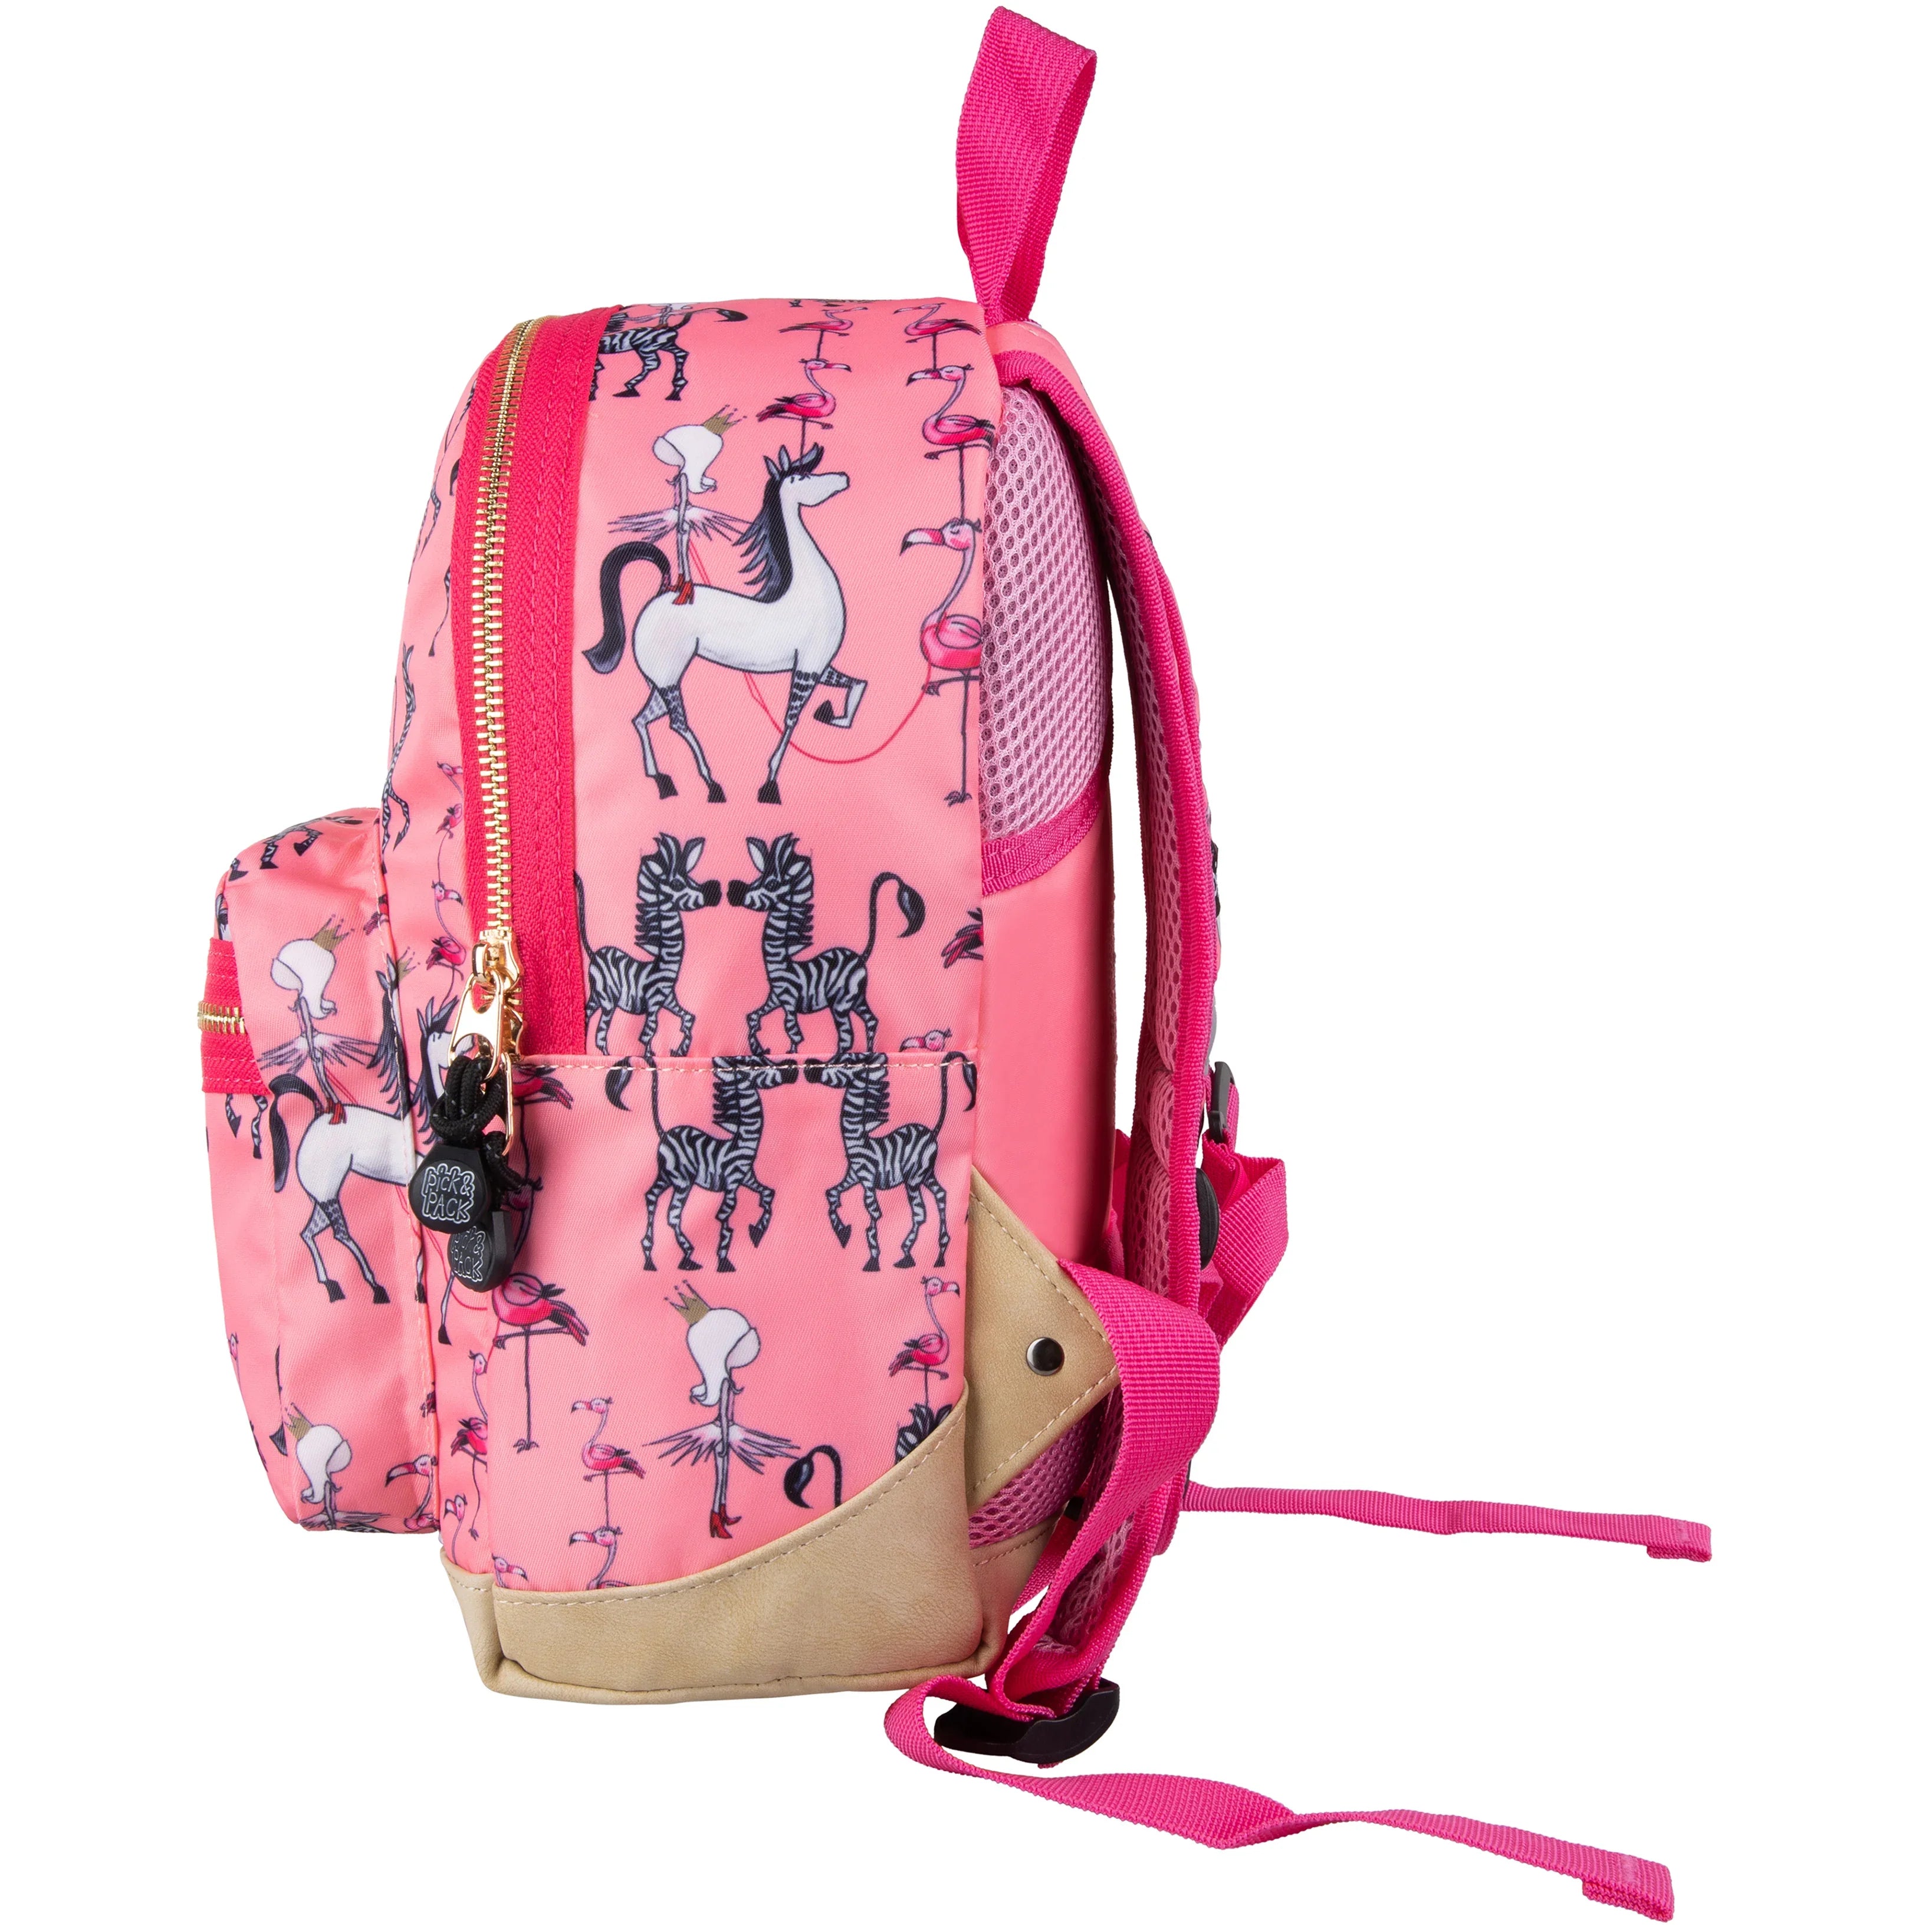 Pick & Pack Royal Princess Kinderrucksack 31 cm - Bright Pink